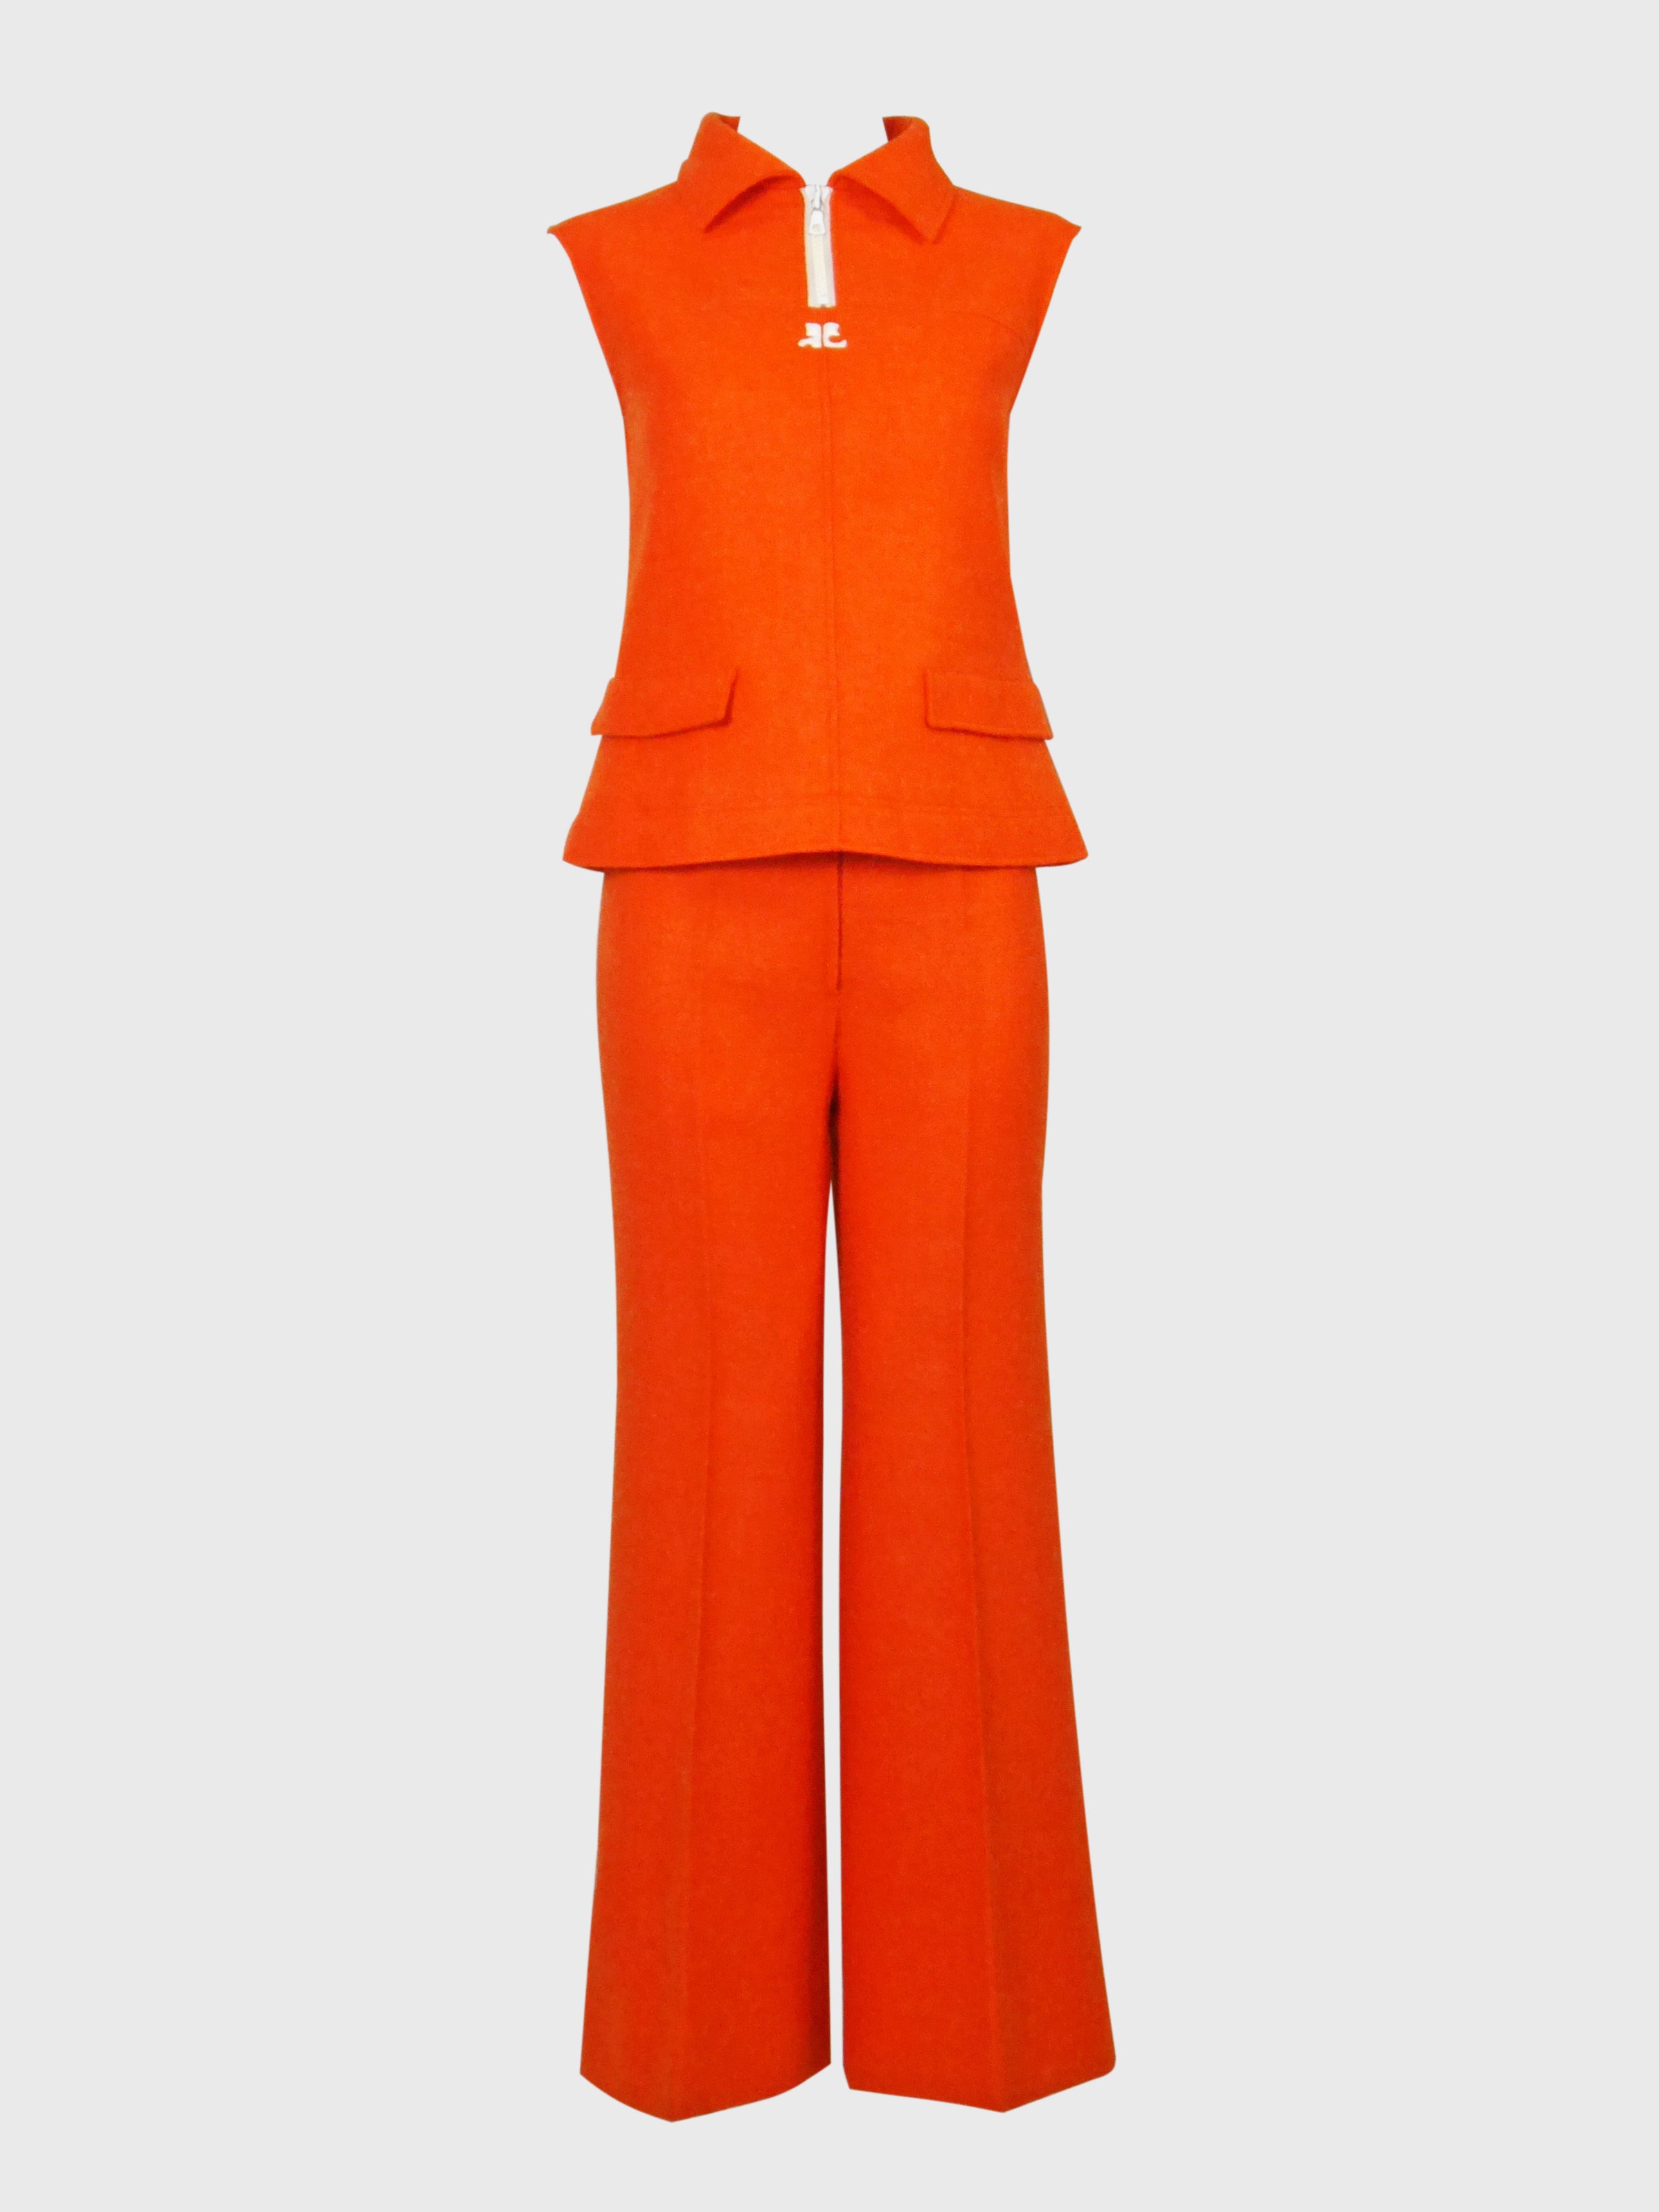 Vintage Butte Knit 2 Piece Leisure Pant Suit Women’s Size 12 coral orange  60 70